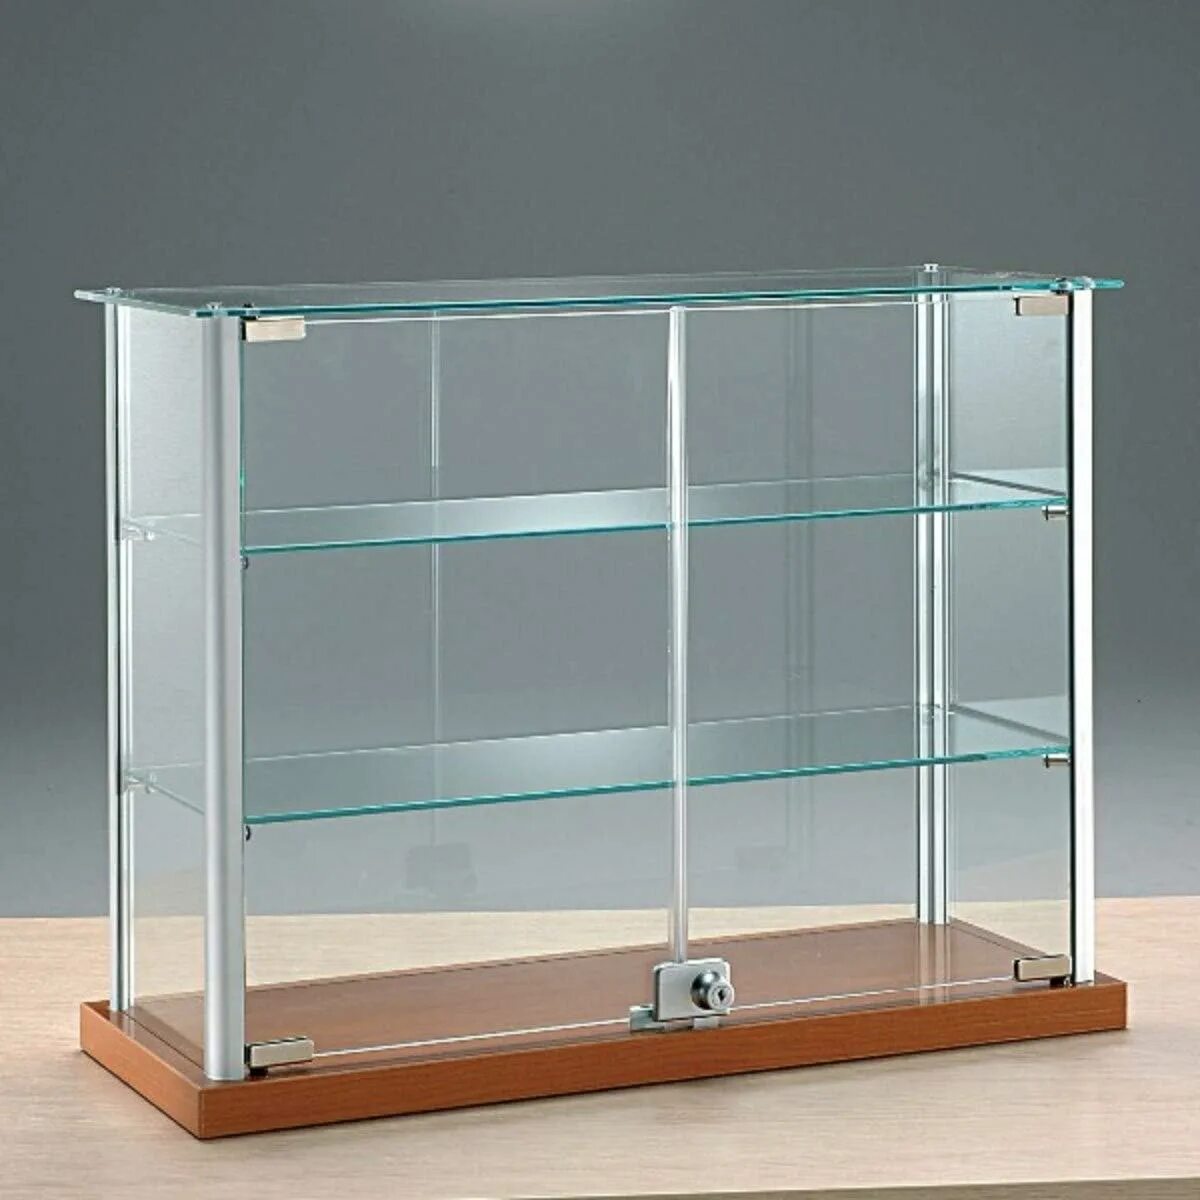 Витрина Glass Showcase h 1800. Витрина стеклянная 50#30. Витрина стеклянная "Saphir Noir". Раздвижные витрины